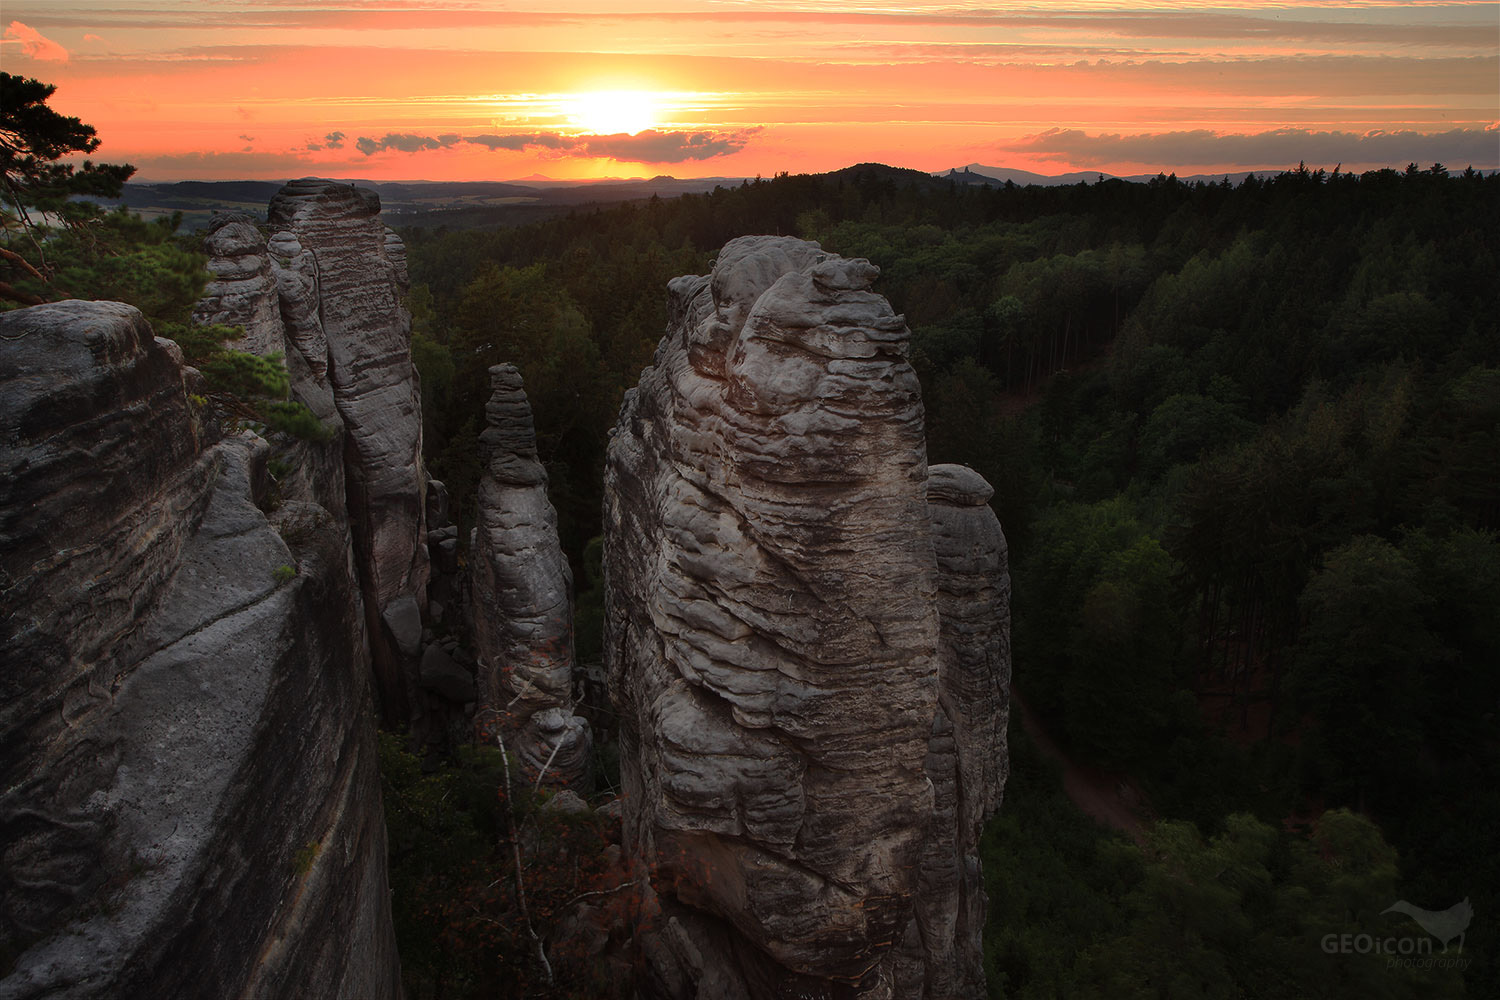 Prachov rocks, Bohemian paradise, Czech republic.